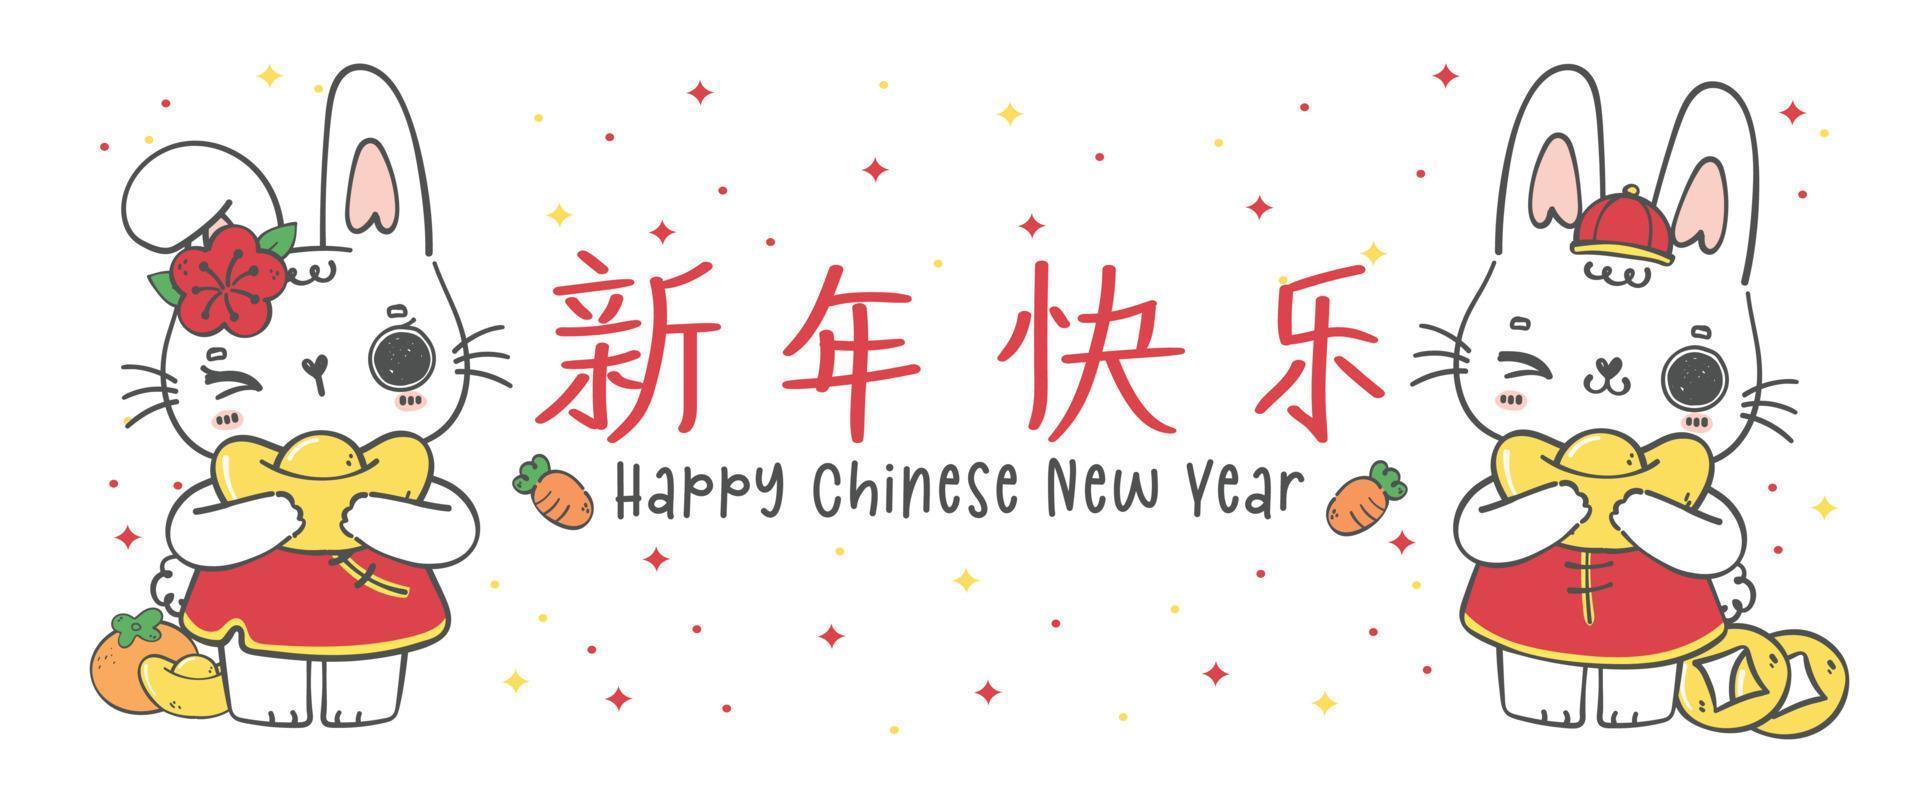 groupe de deux lapins lapins heureux garçon et fille avec glod, joyeux nouvel an chinois bannière, doodle main dessin illustration vecteur